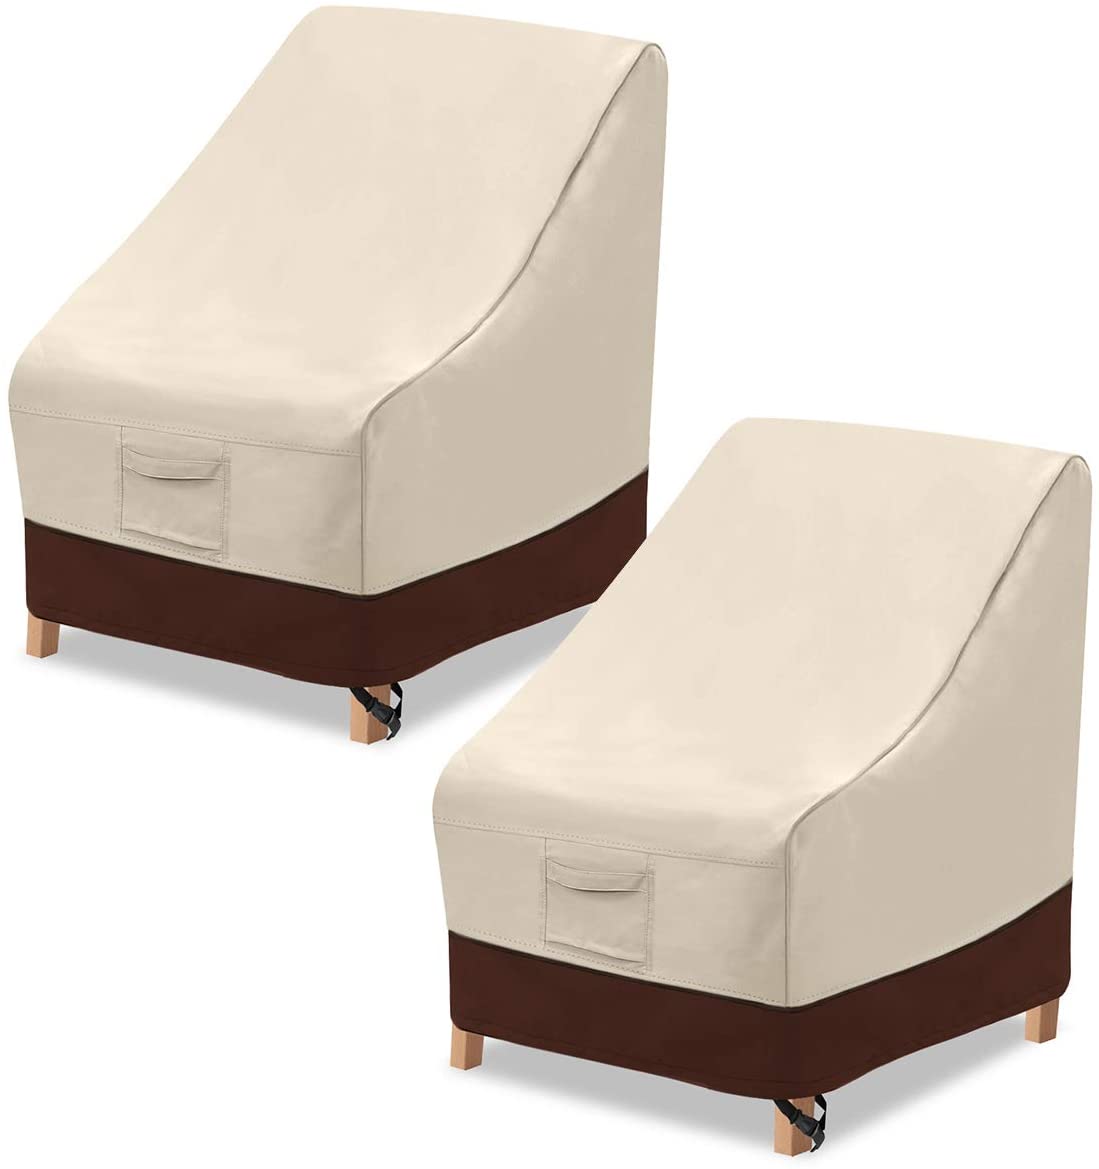 ריהוט כיסוי אבק קצוות חיצוני לגינה חיצונית כיסאות ספה לא ארוג ציפוי בד עם PE